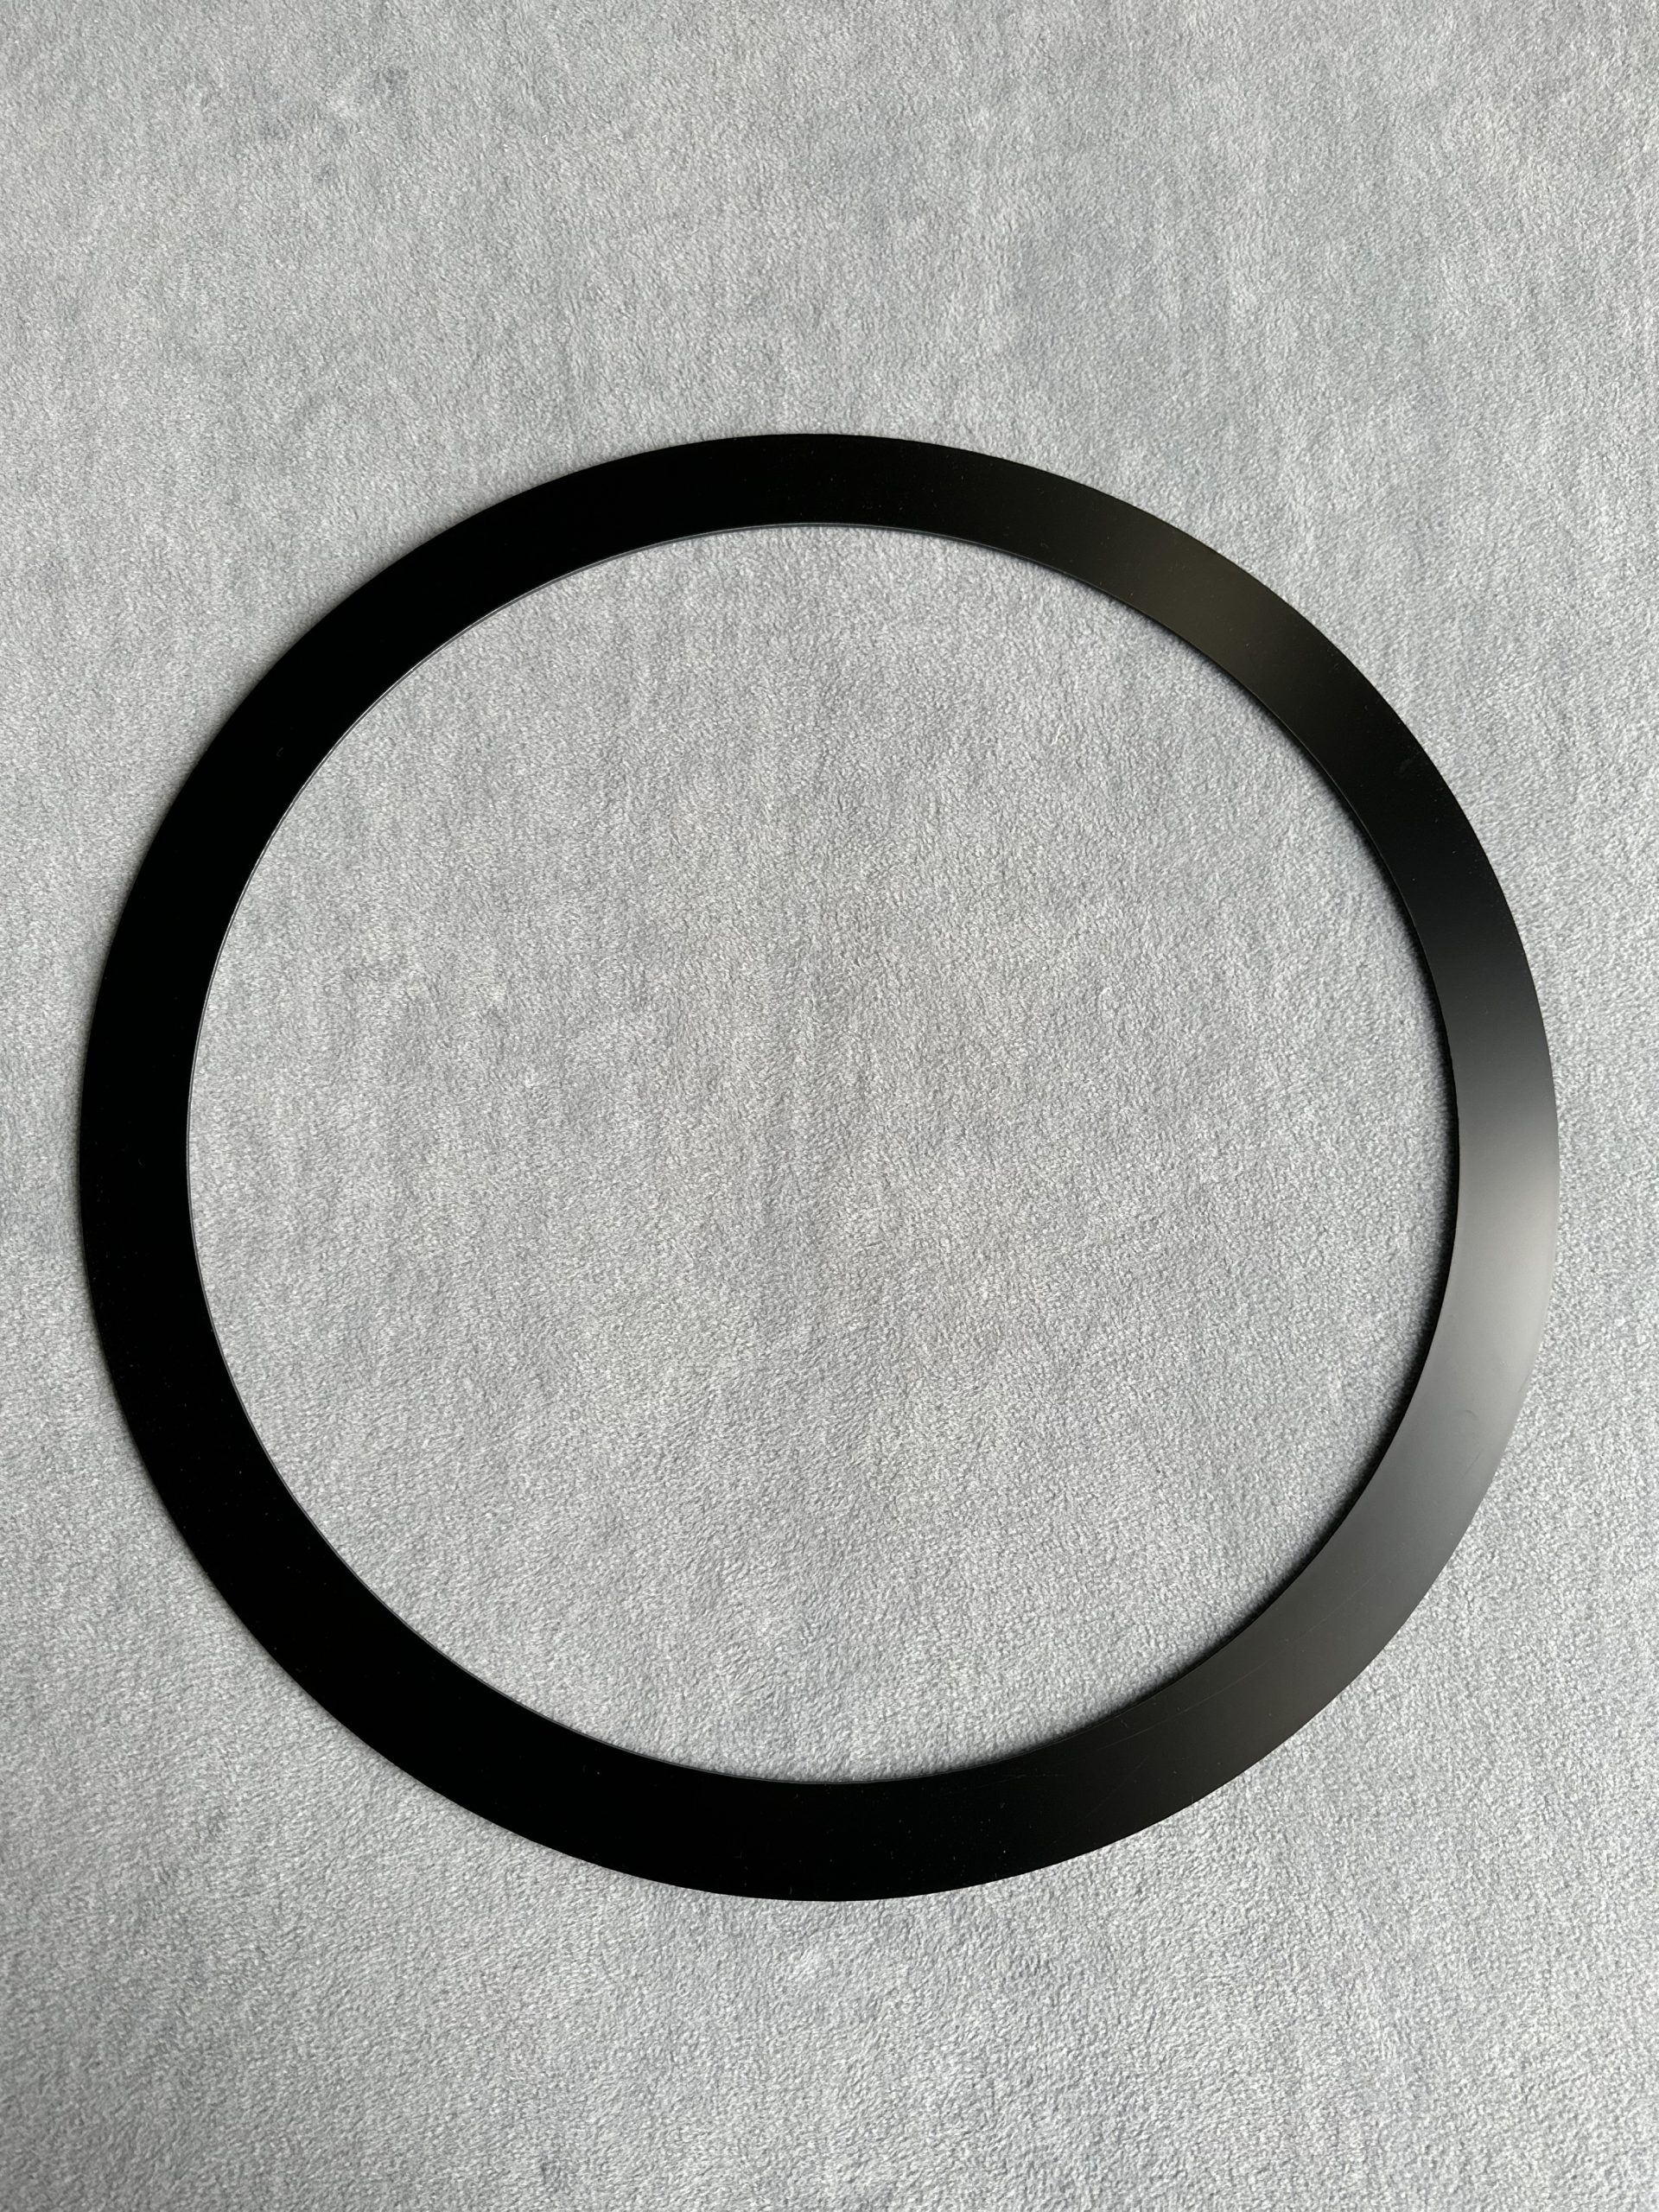 Tapa junta circular de aluminio compuesto de color negro